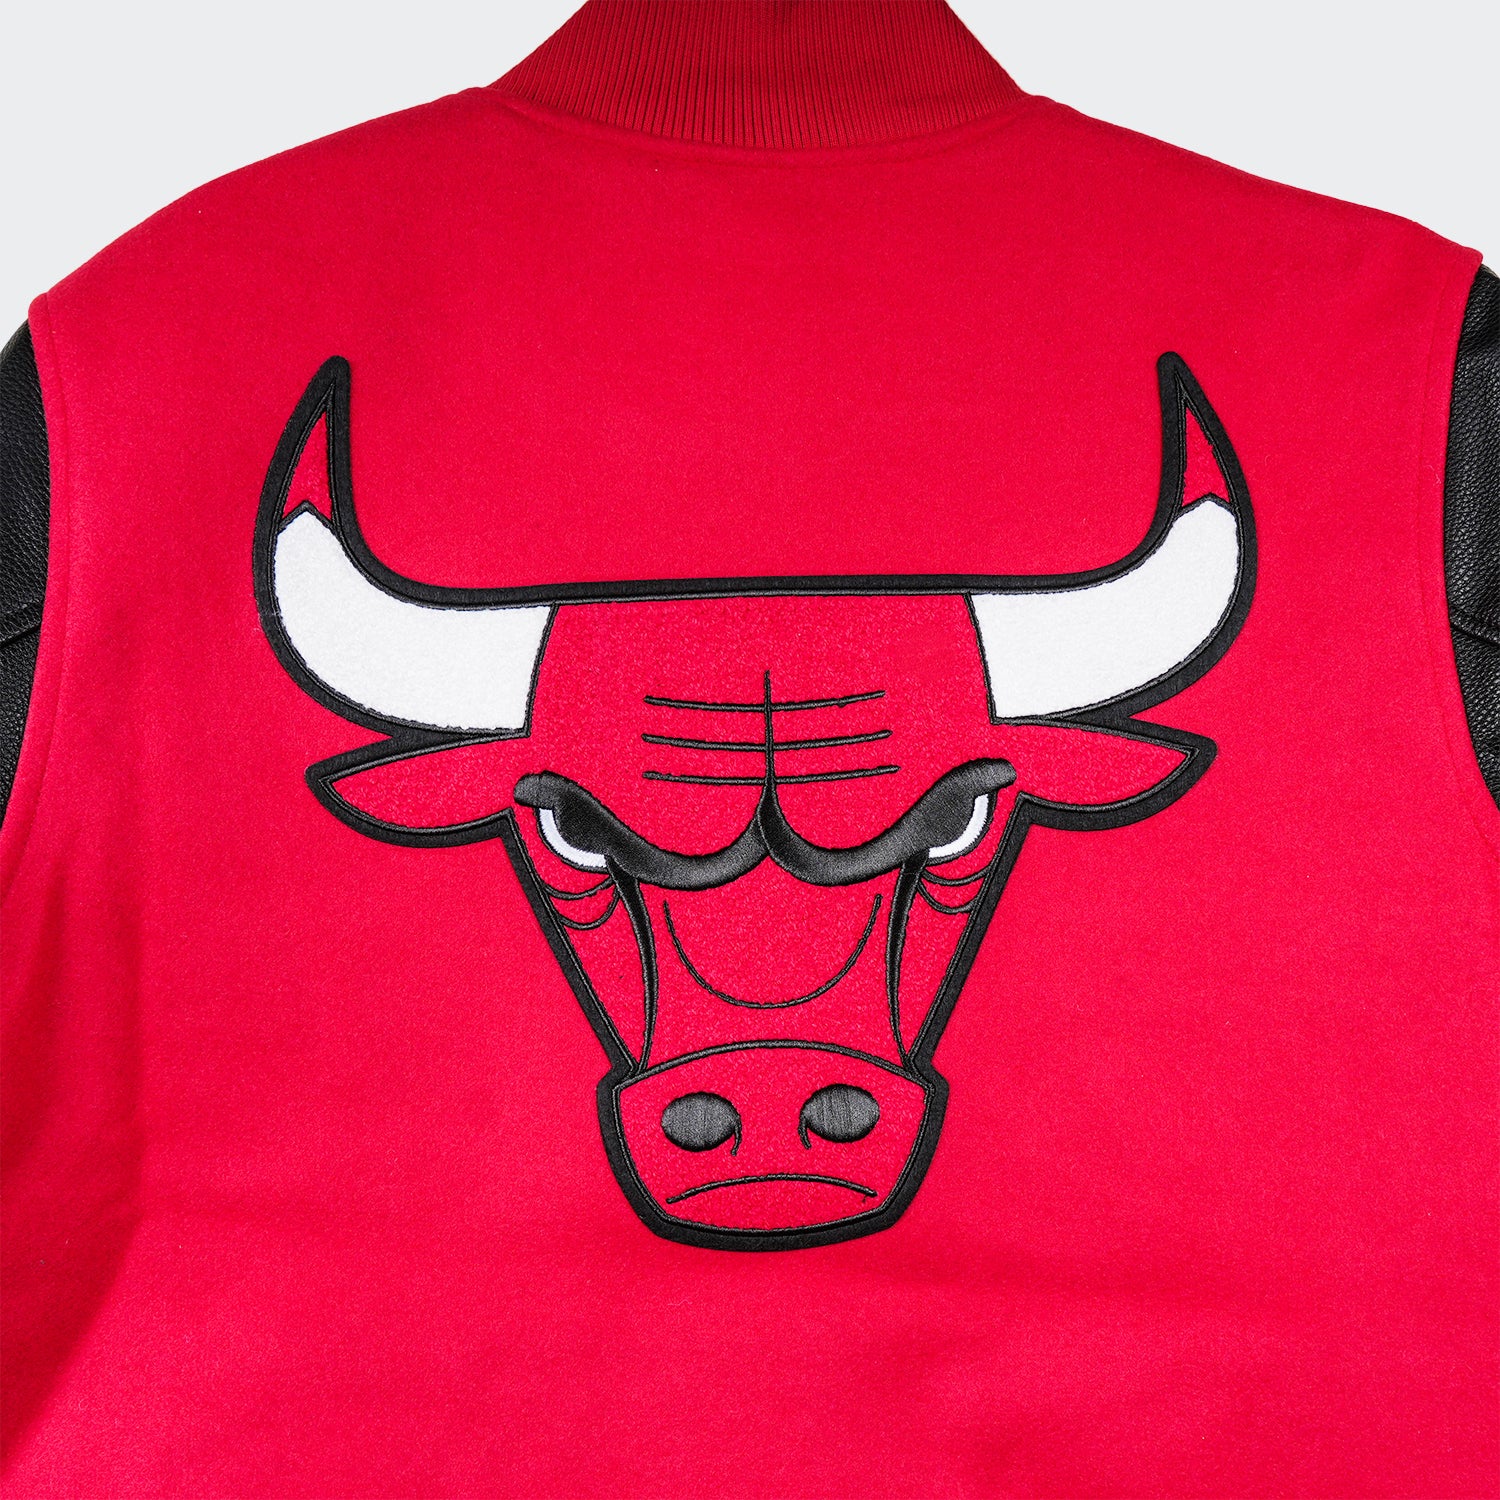 Chicago Bulls Vest